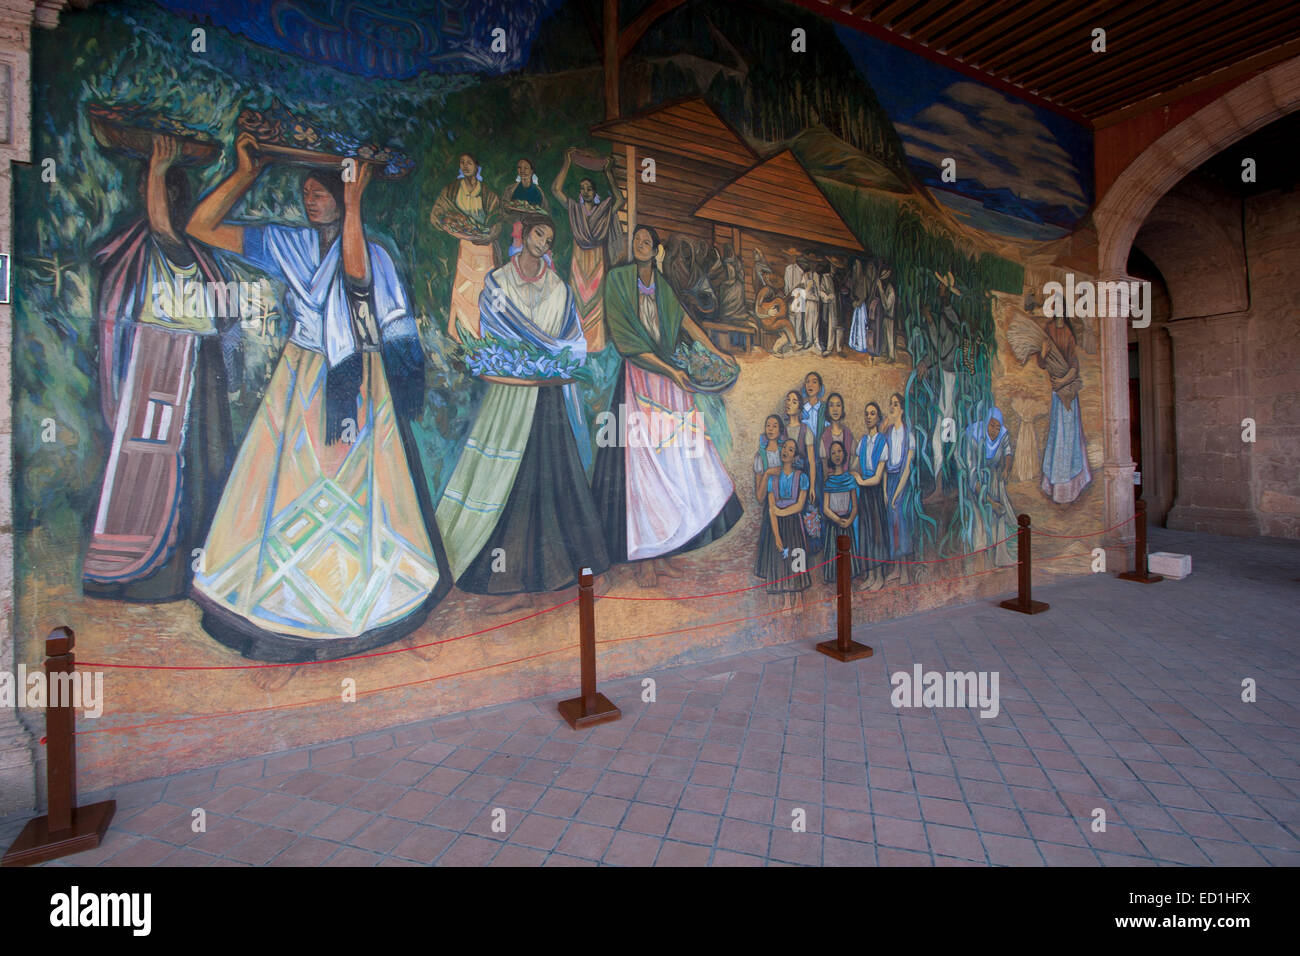 Mural, Palacio de Gobierno, Morelia, Michoacan, Mexico Stock Photo